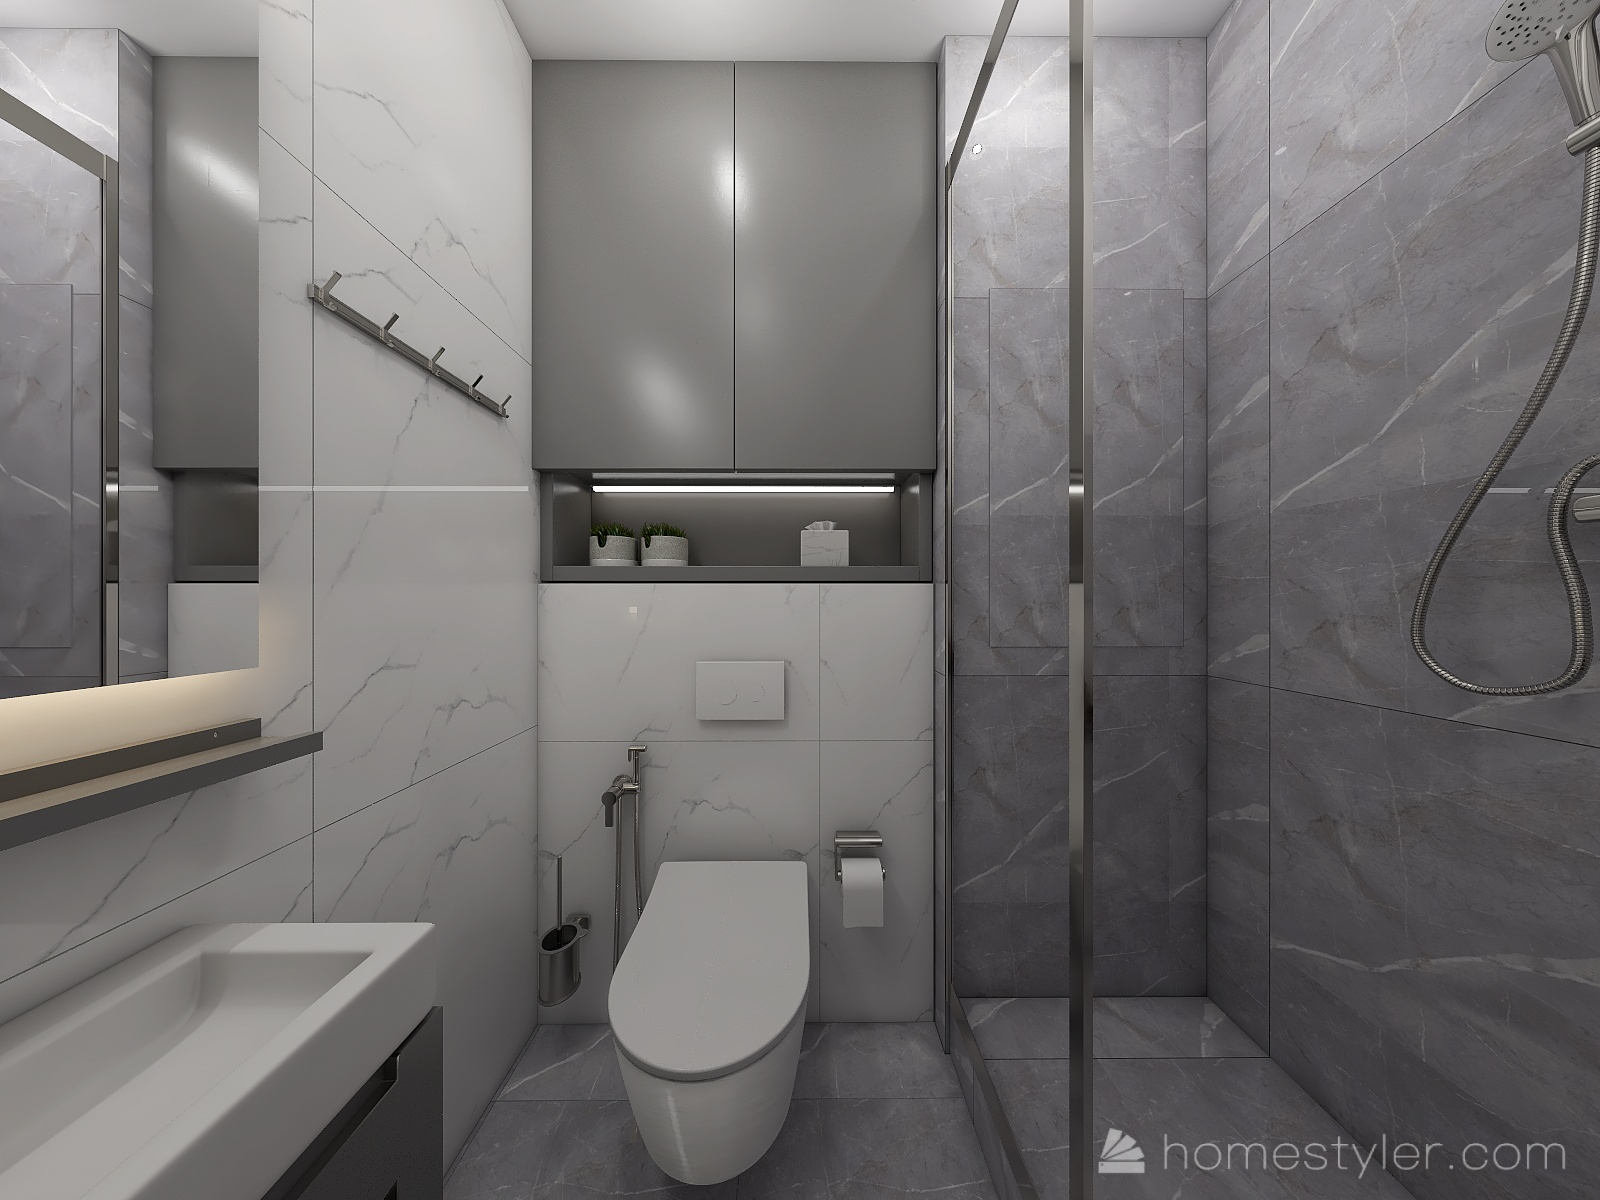 Дизайн ванной 2 на 2 метра: советы по оформлению интерьера +75 фото